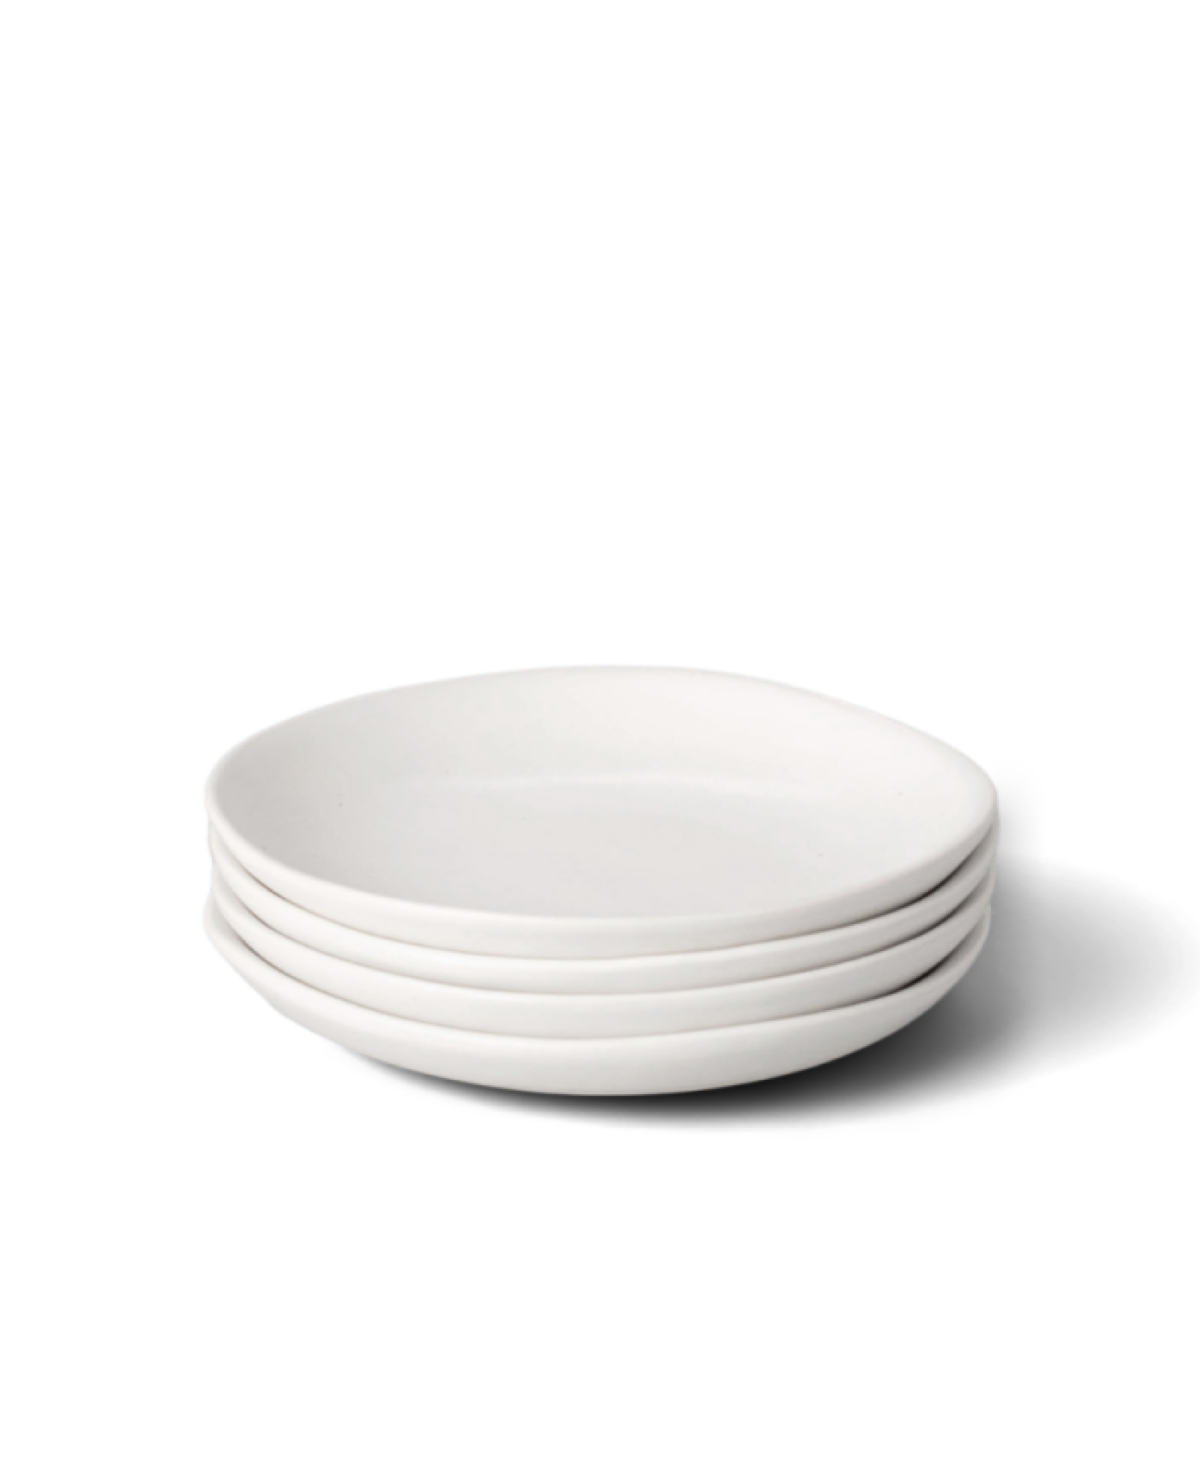 Little Plates, Set of 4 - Desert Taupe